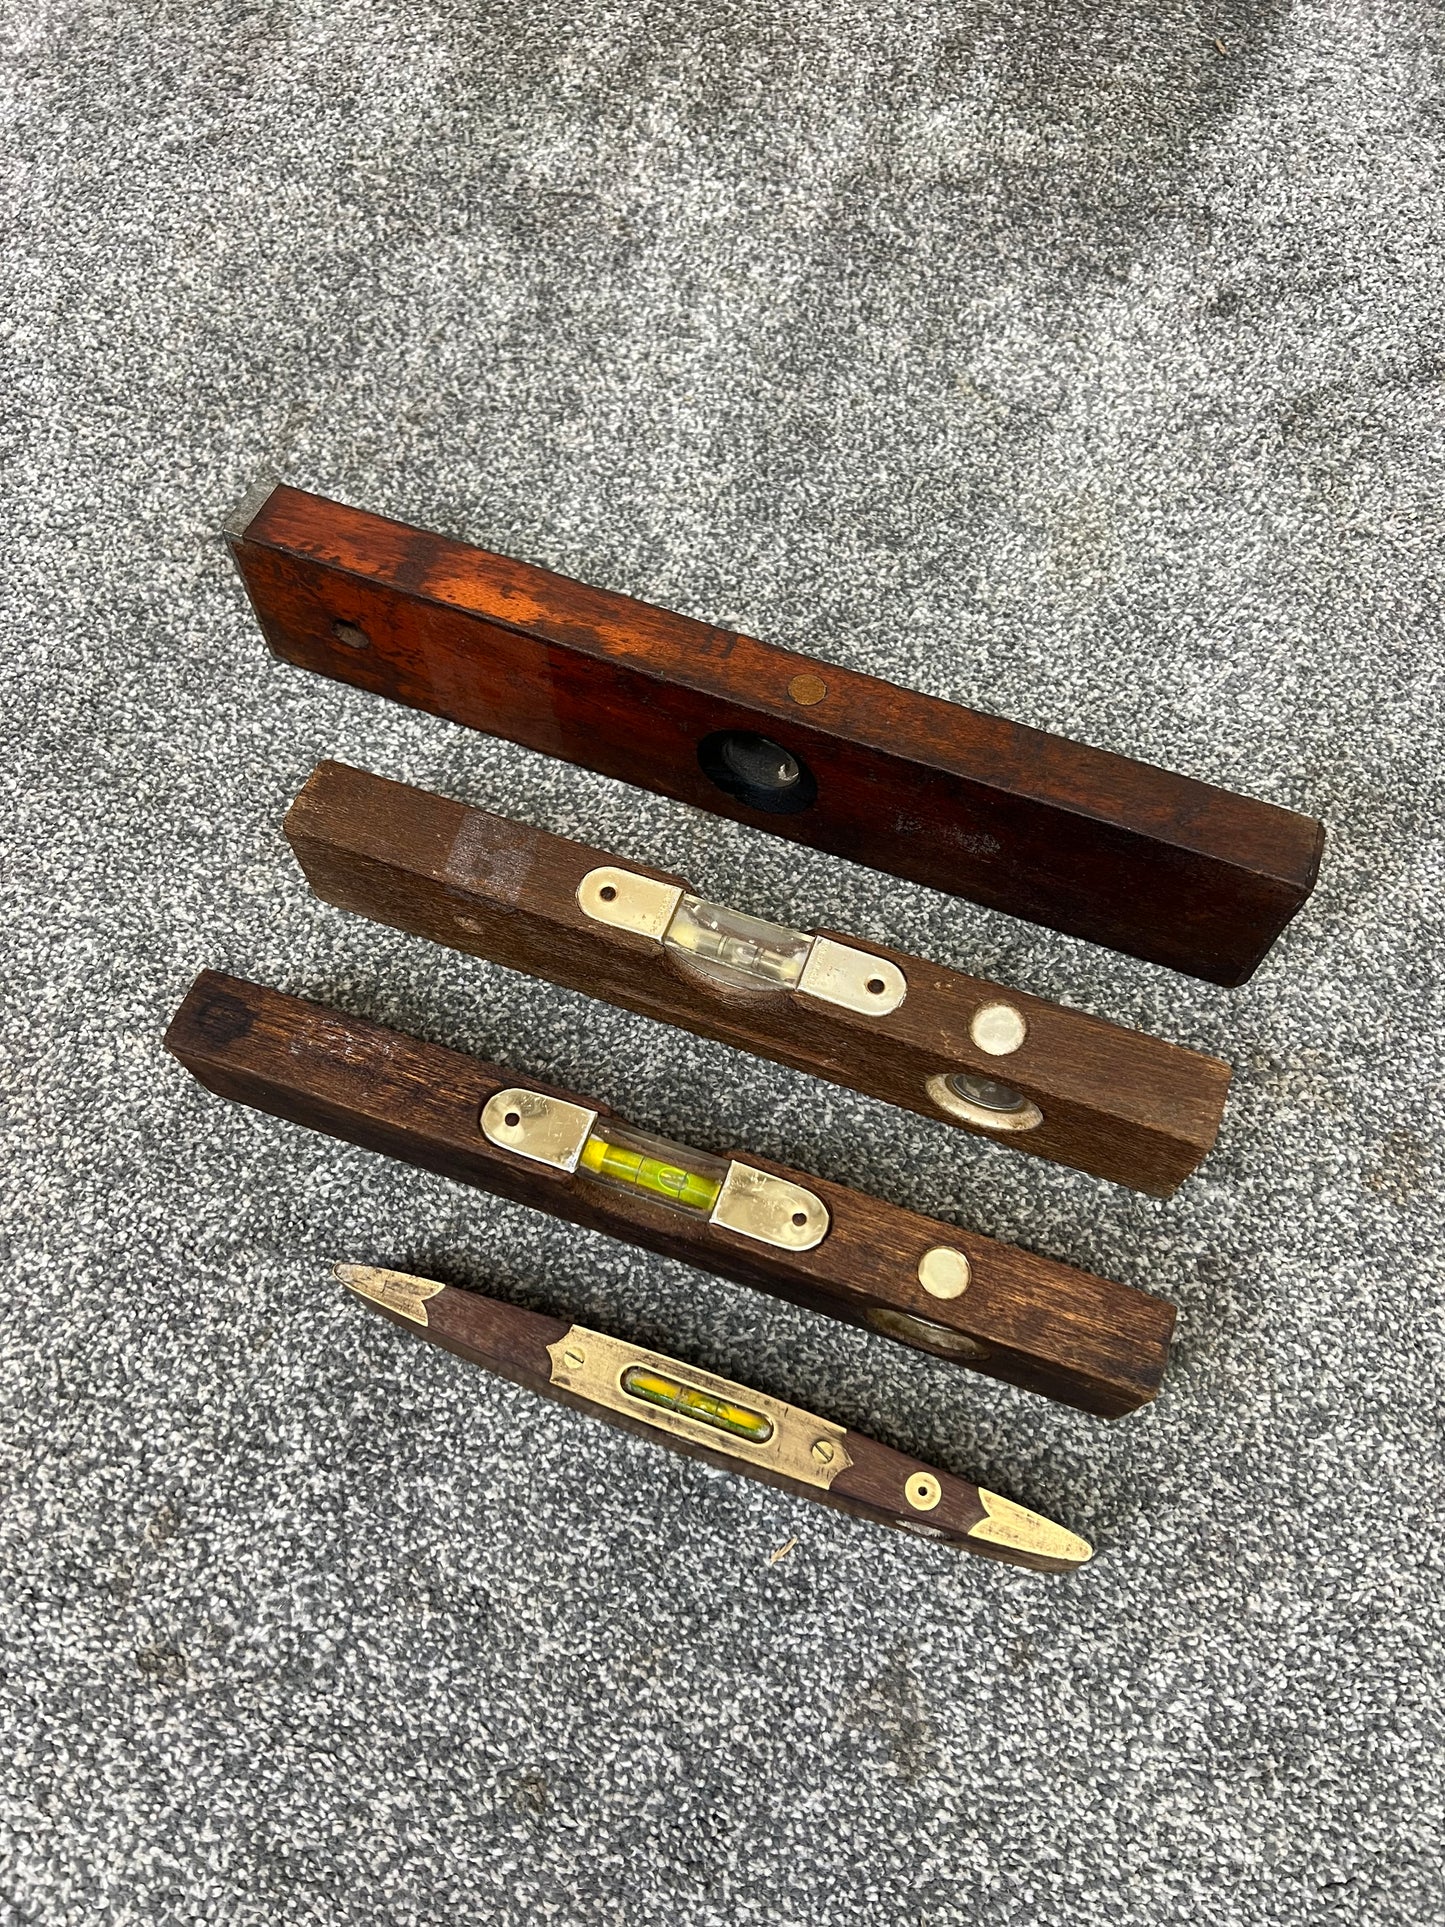 4x Vintage Wood & Brass Spirit Levels Job Lot Vintage Workshop Garage Tools